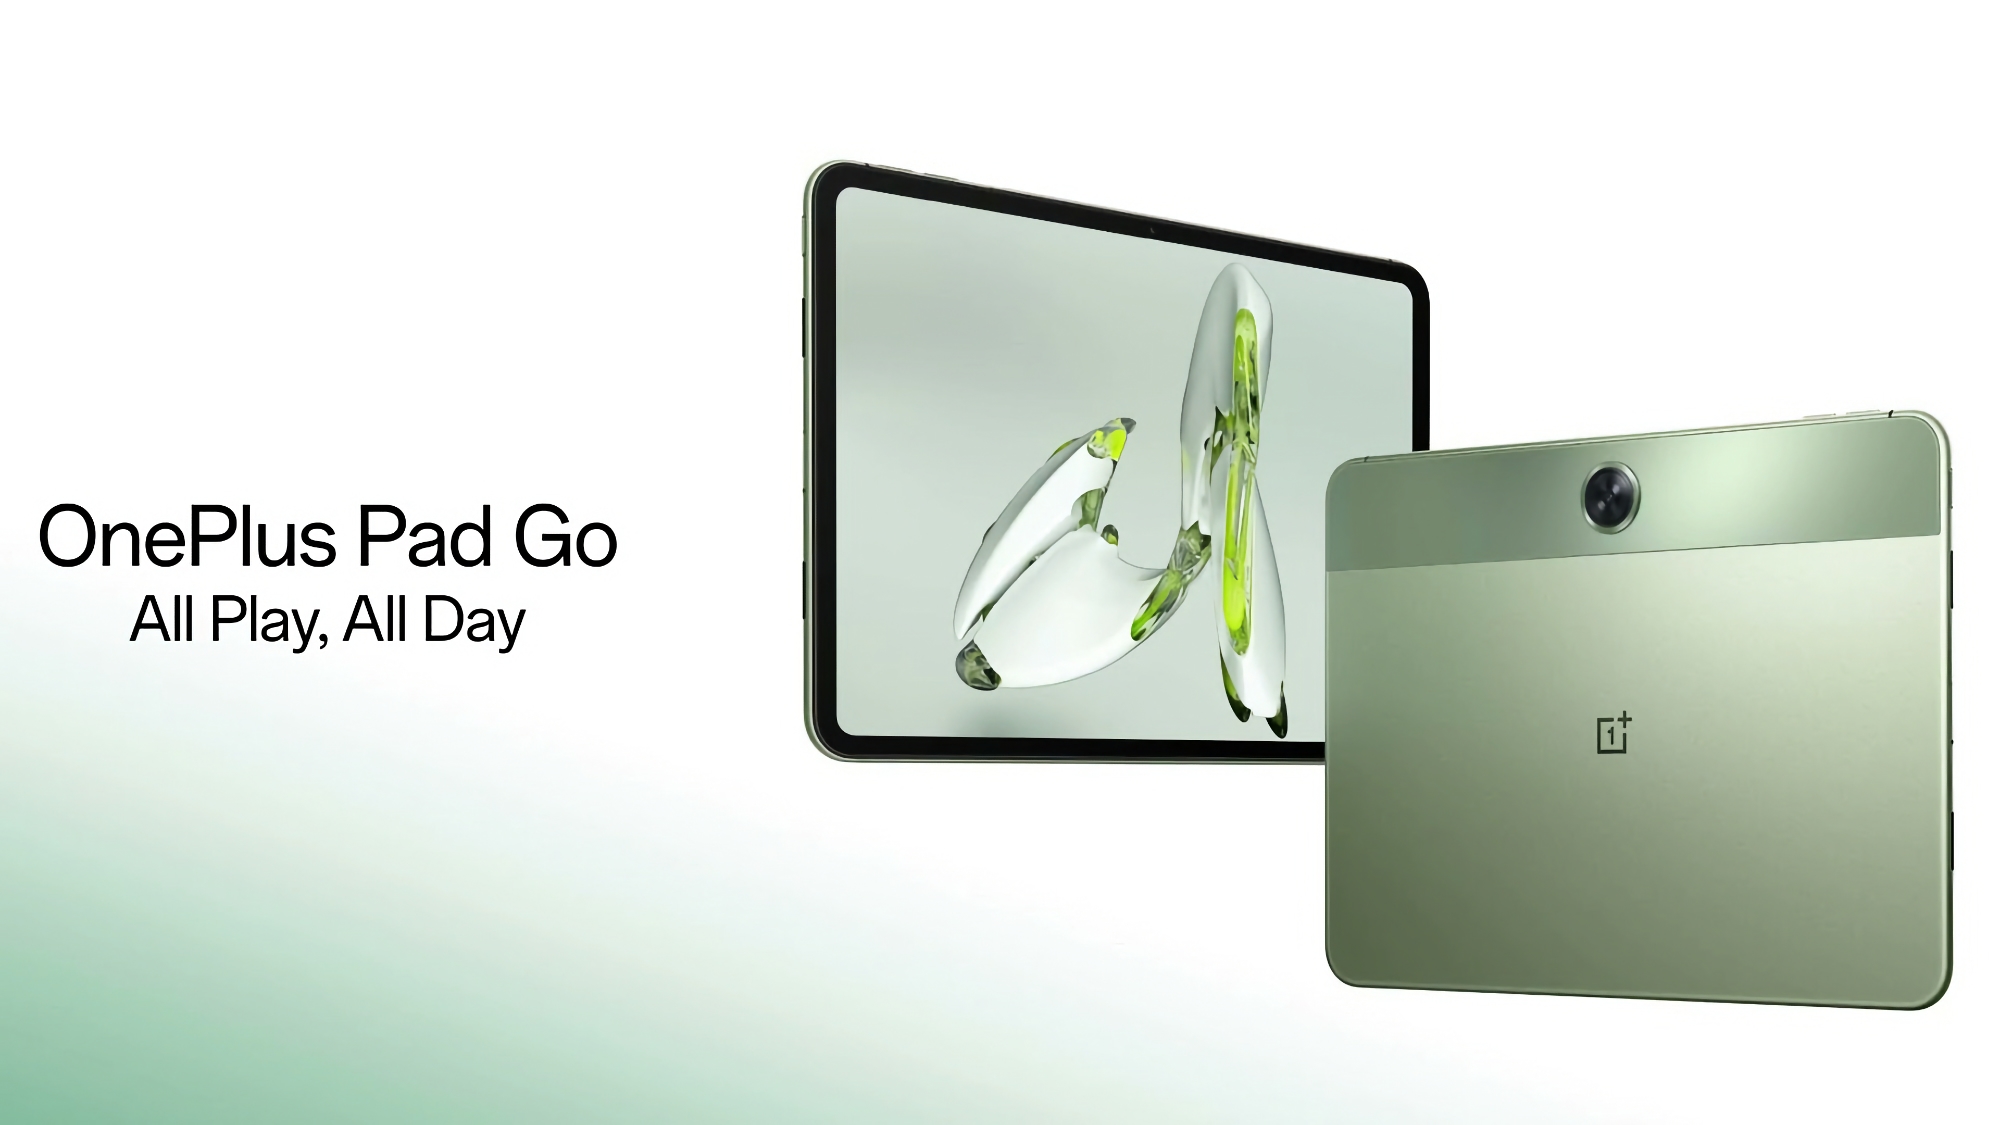 OnePlus Pad Go ha debuttato in Europa: un tablet con display 2K a 90Hz, chip MediaTek Helio G99, LTE e un prezzo di 299 euro